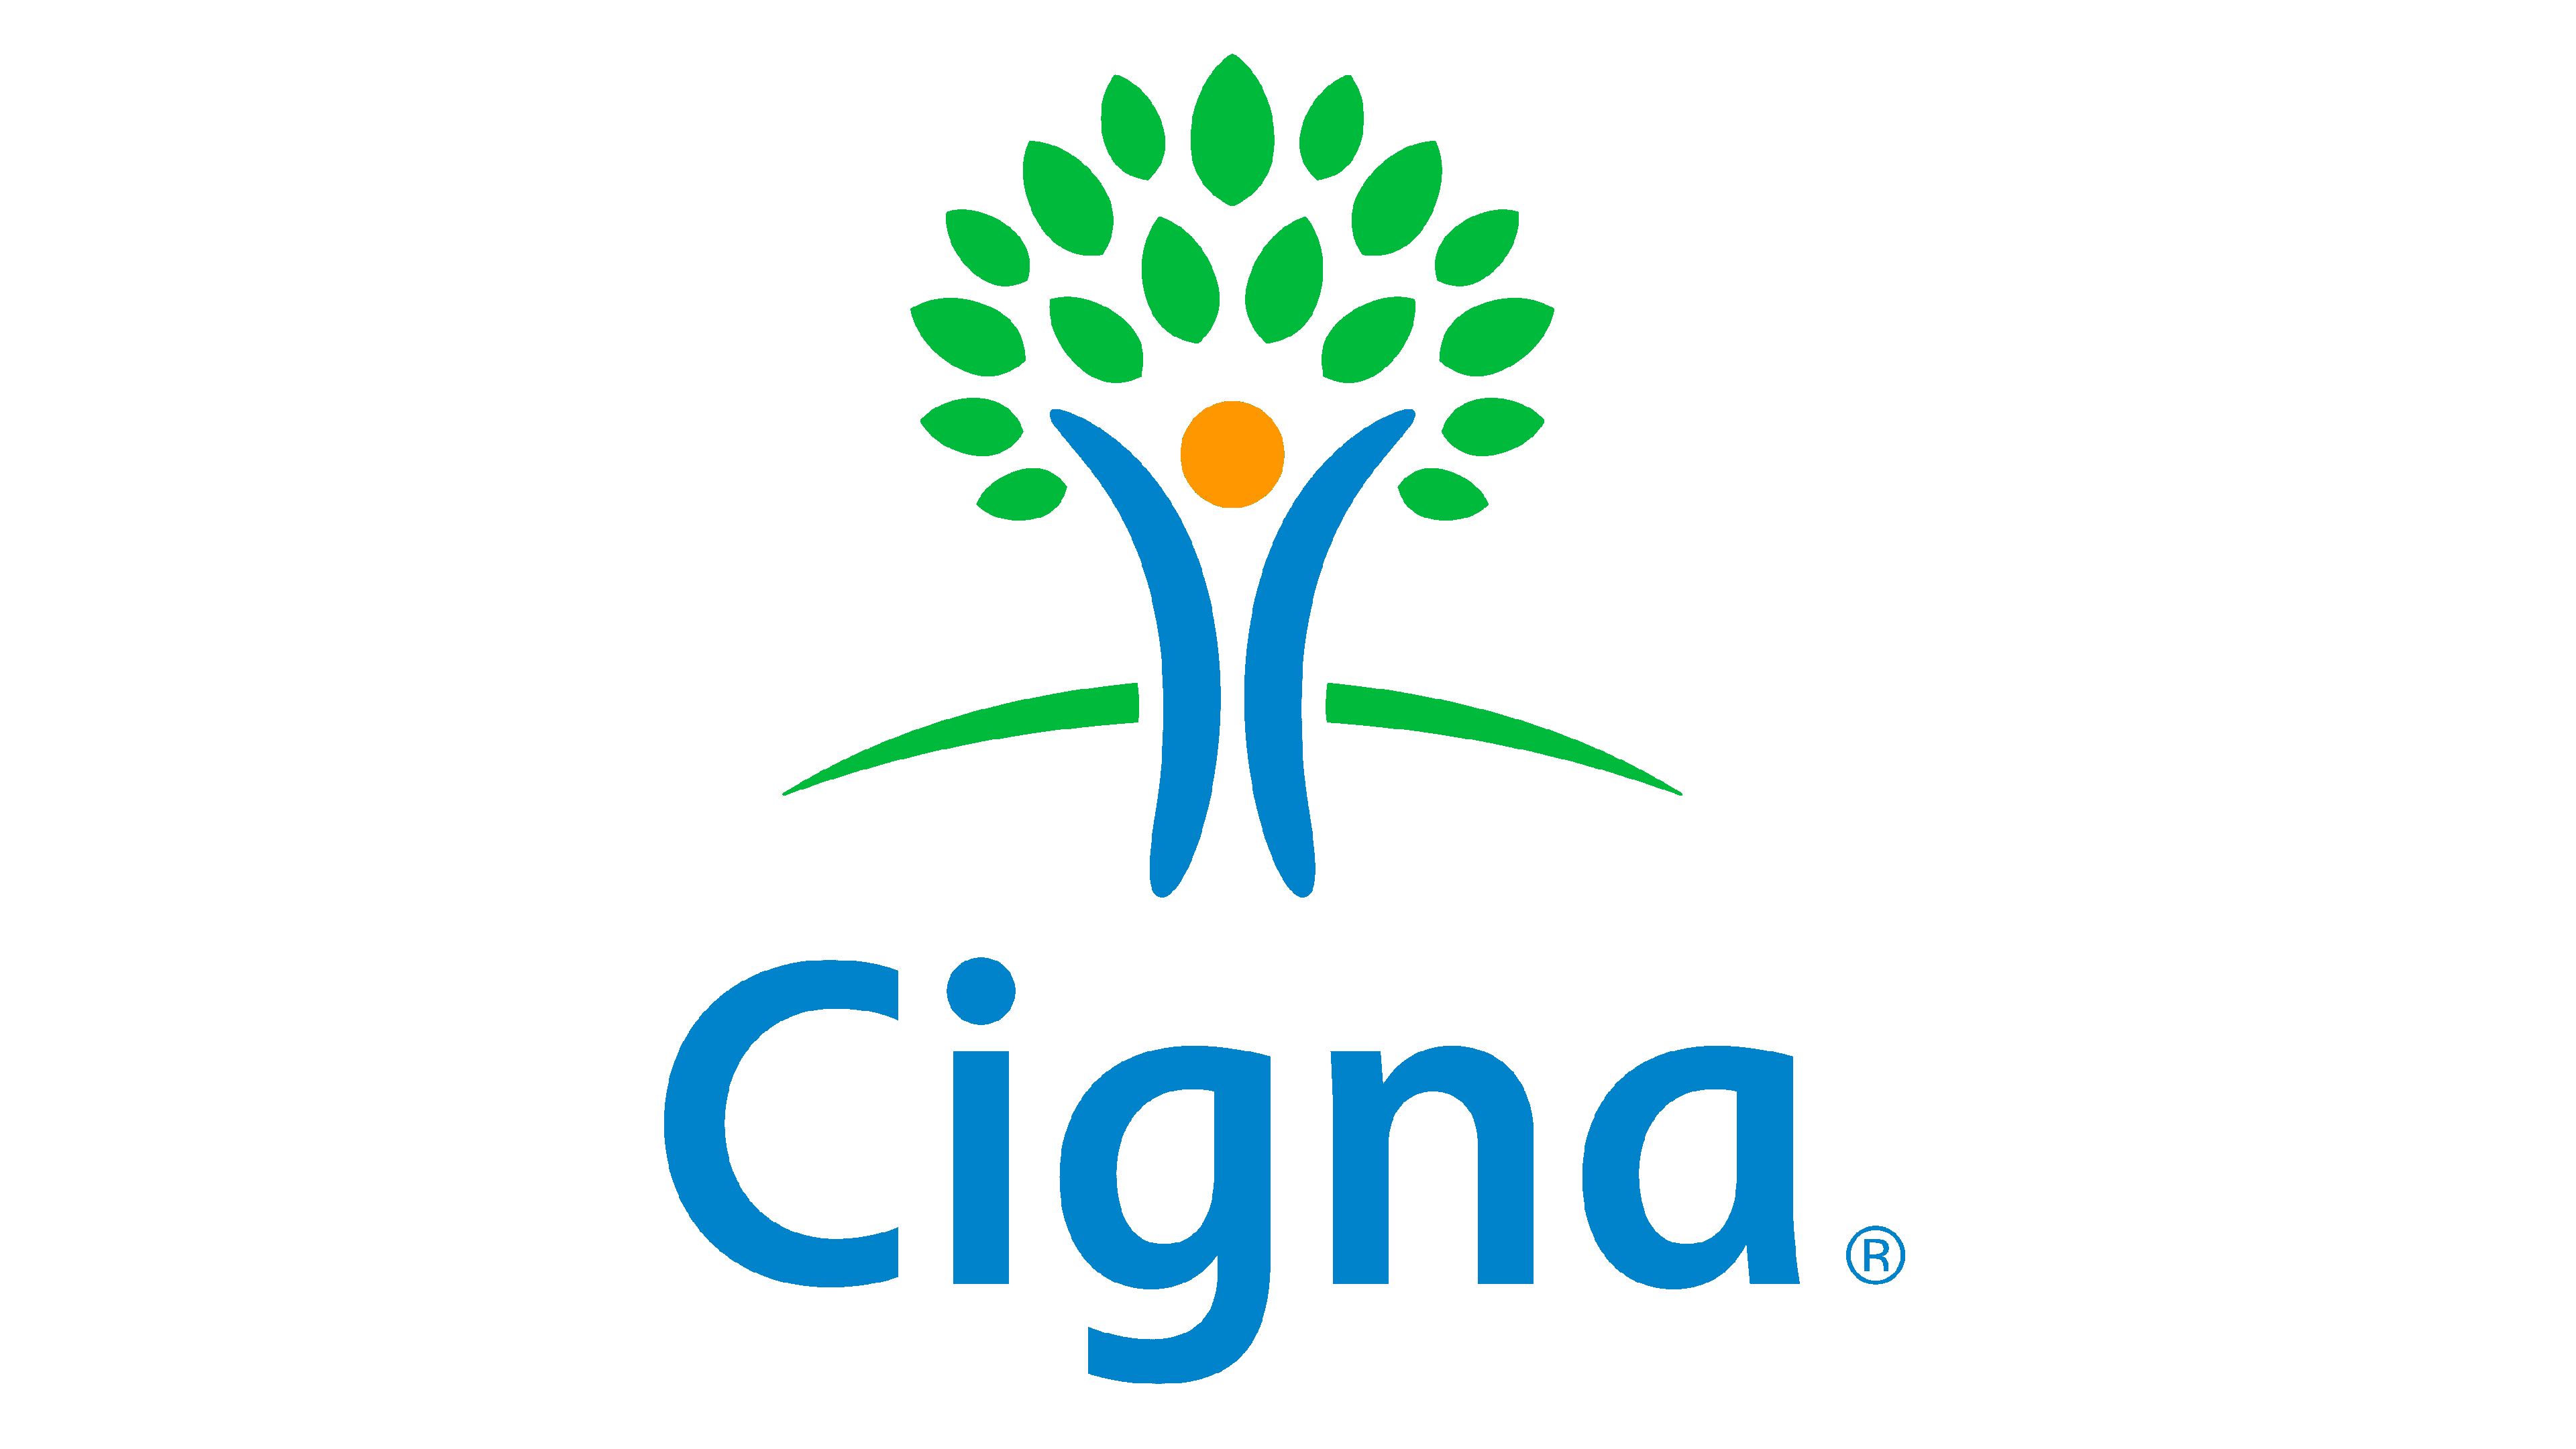 Cigna Logo Logo